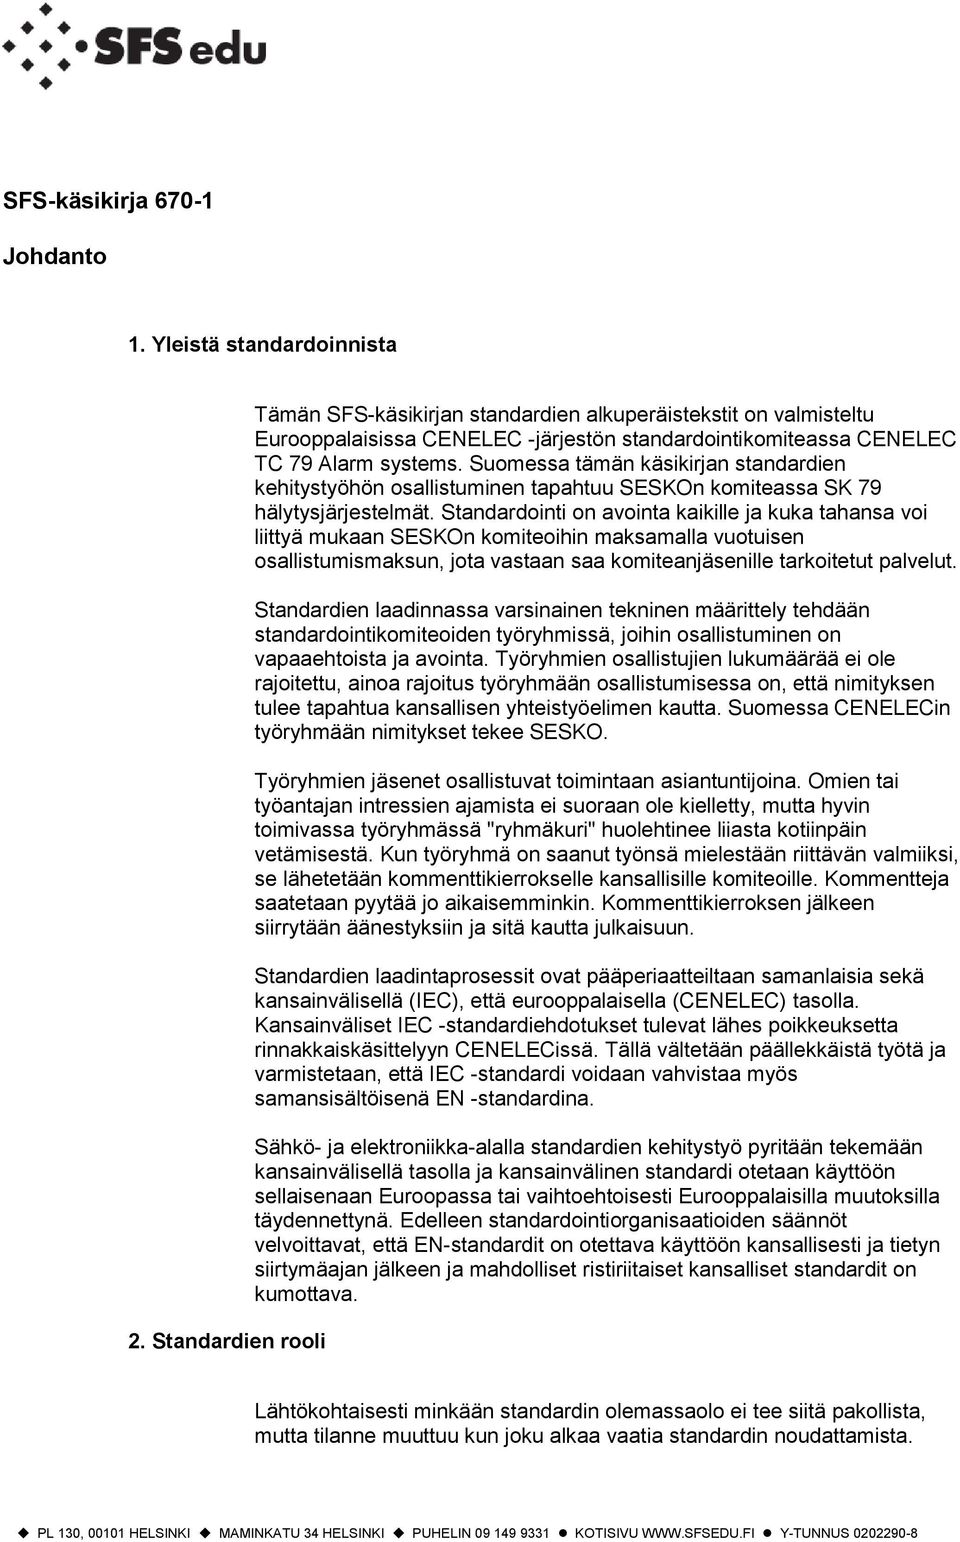 Suomessa tämän käsikirjan standardien kehitystyöhön osallistuminen tapahtuu SESKOn komiteassa SK hälytysjärjestelmät.